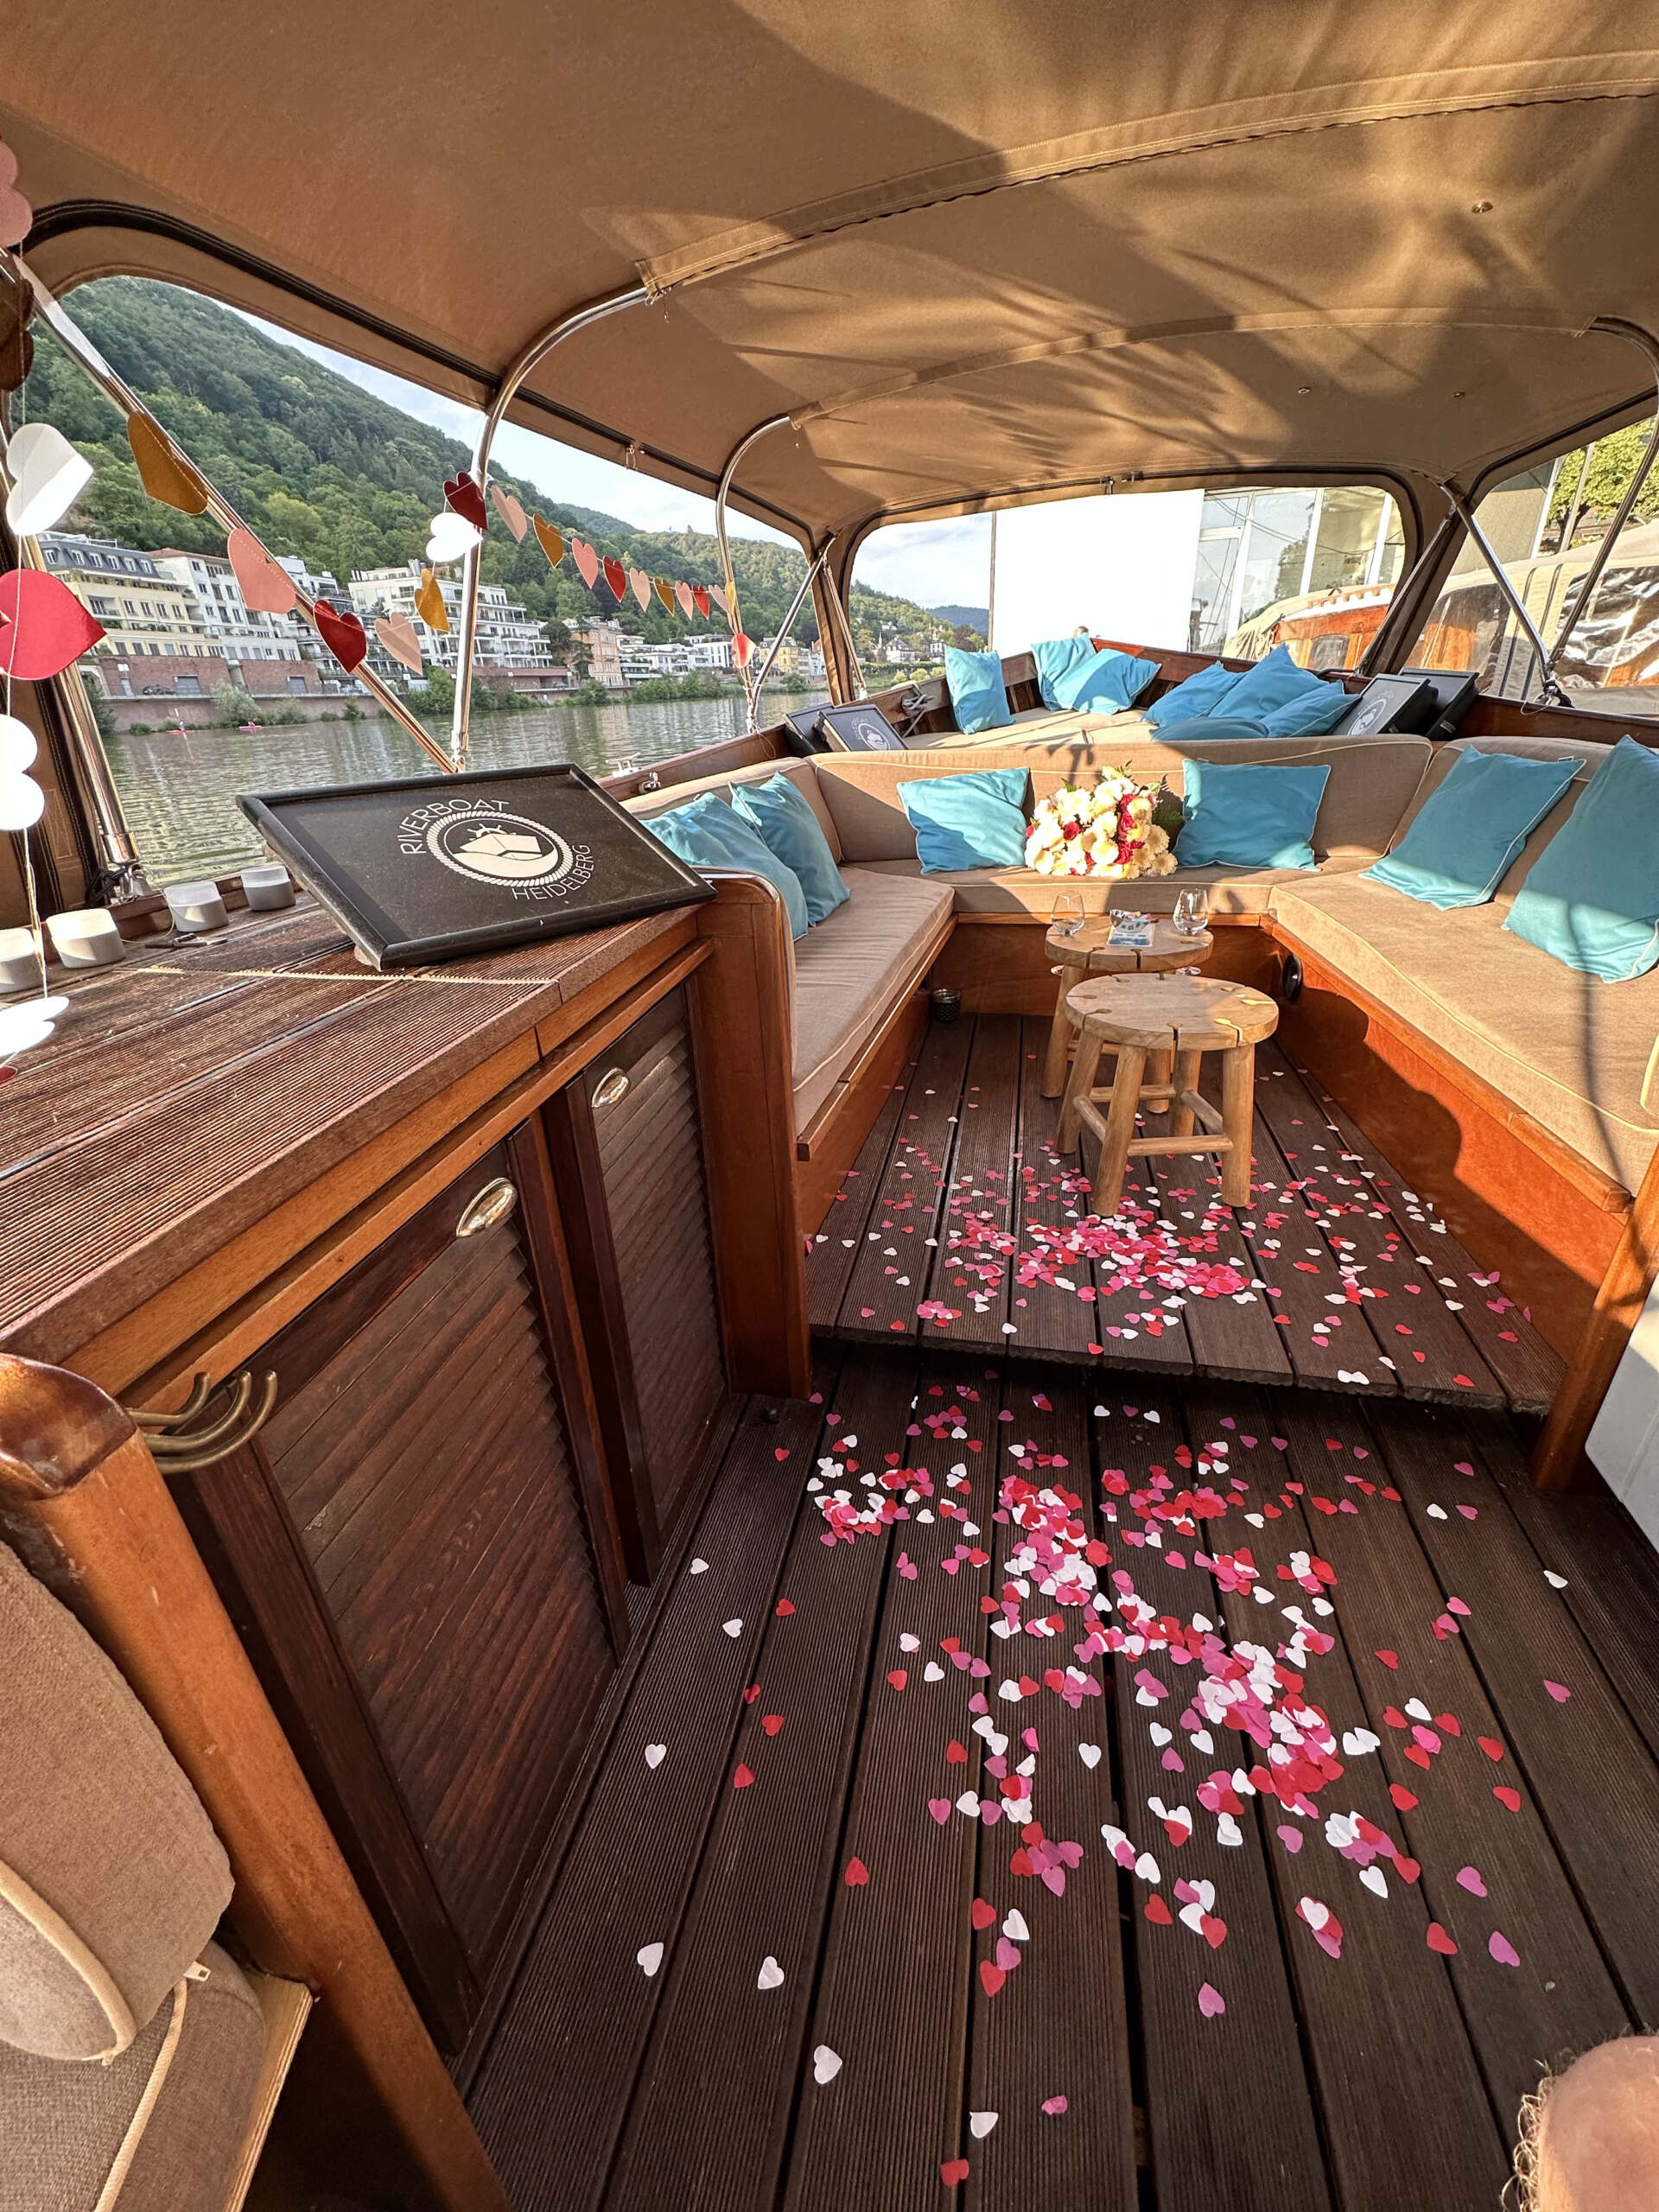 Das Boot von Riverboat ist vorbereitet für ein romantisches Date in Heidelberg, eine gute Date-Idee